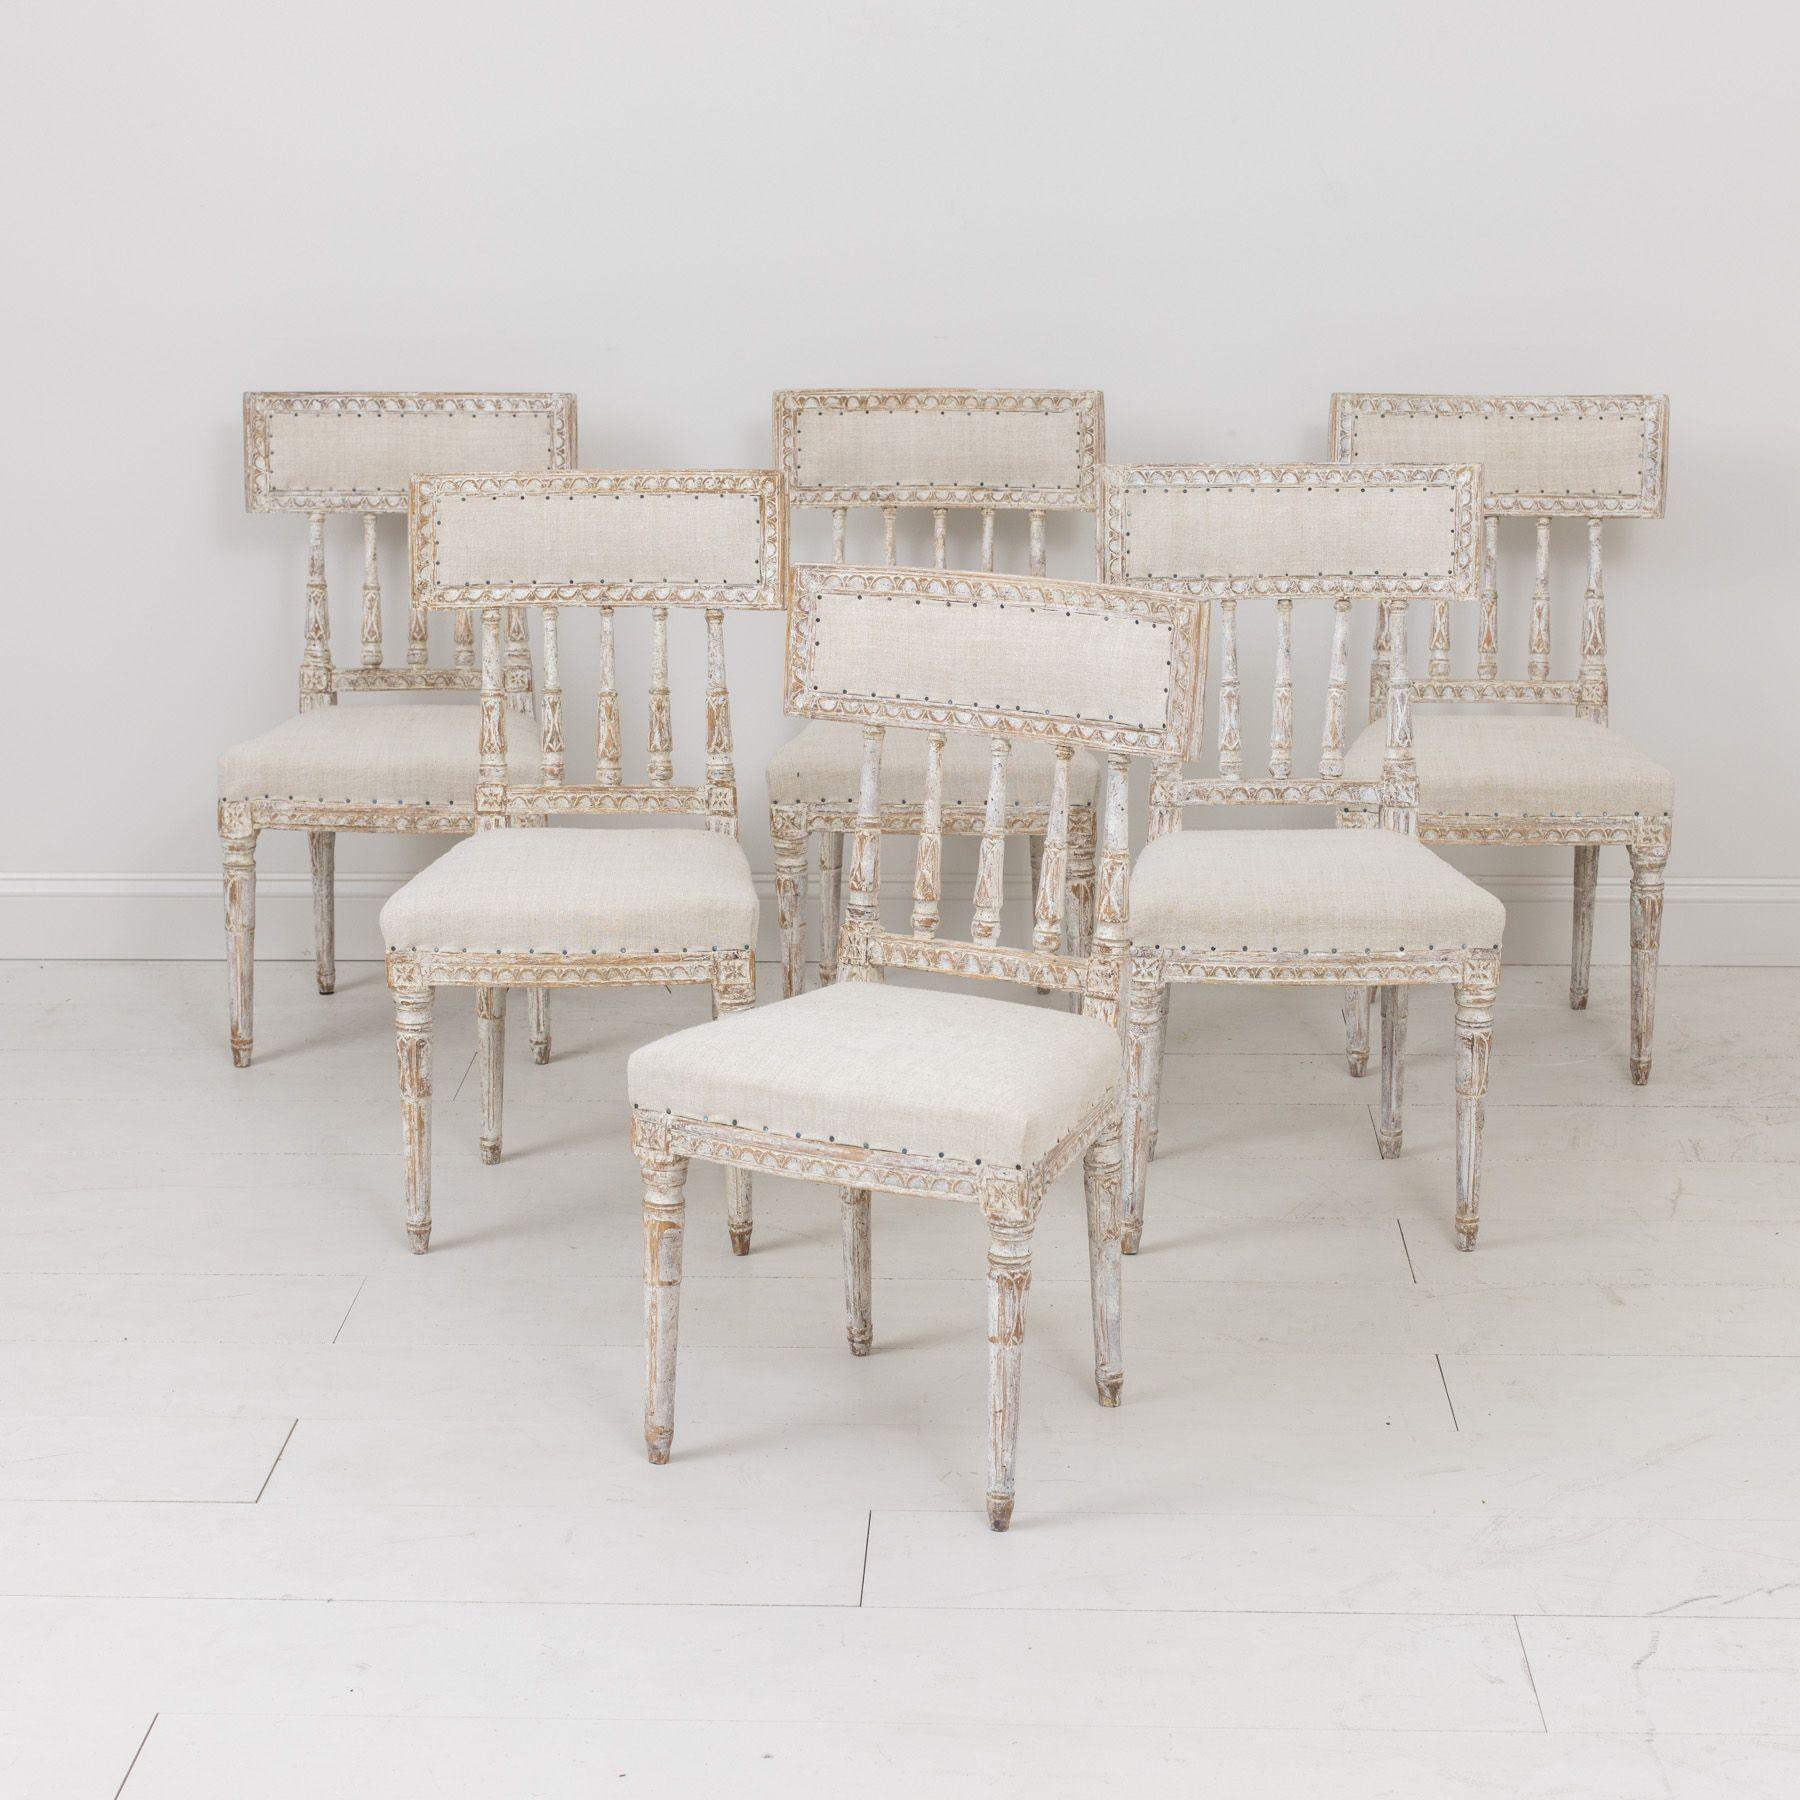 Ein Satz von sechs schwedischen Stühlen aus der Gustavianischen Periode in originaler Elfenbein / Taupe / Grau Farbe, neu gepolstert in antikem Leinen. Diese schönen Stühle haben geschwungene Rückenlehnen, die von antiken römischen 